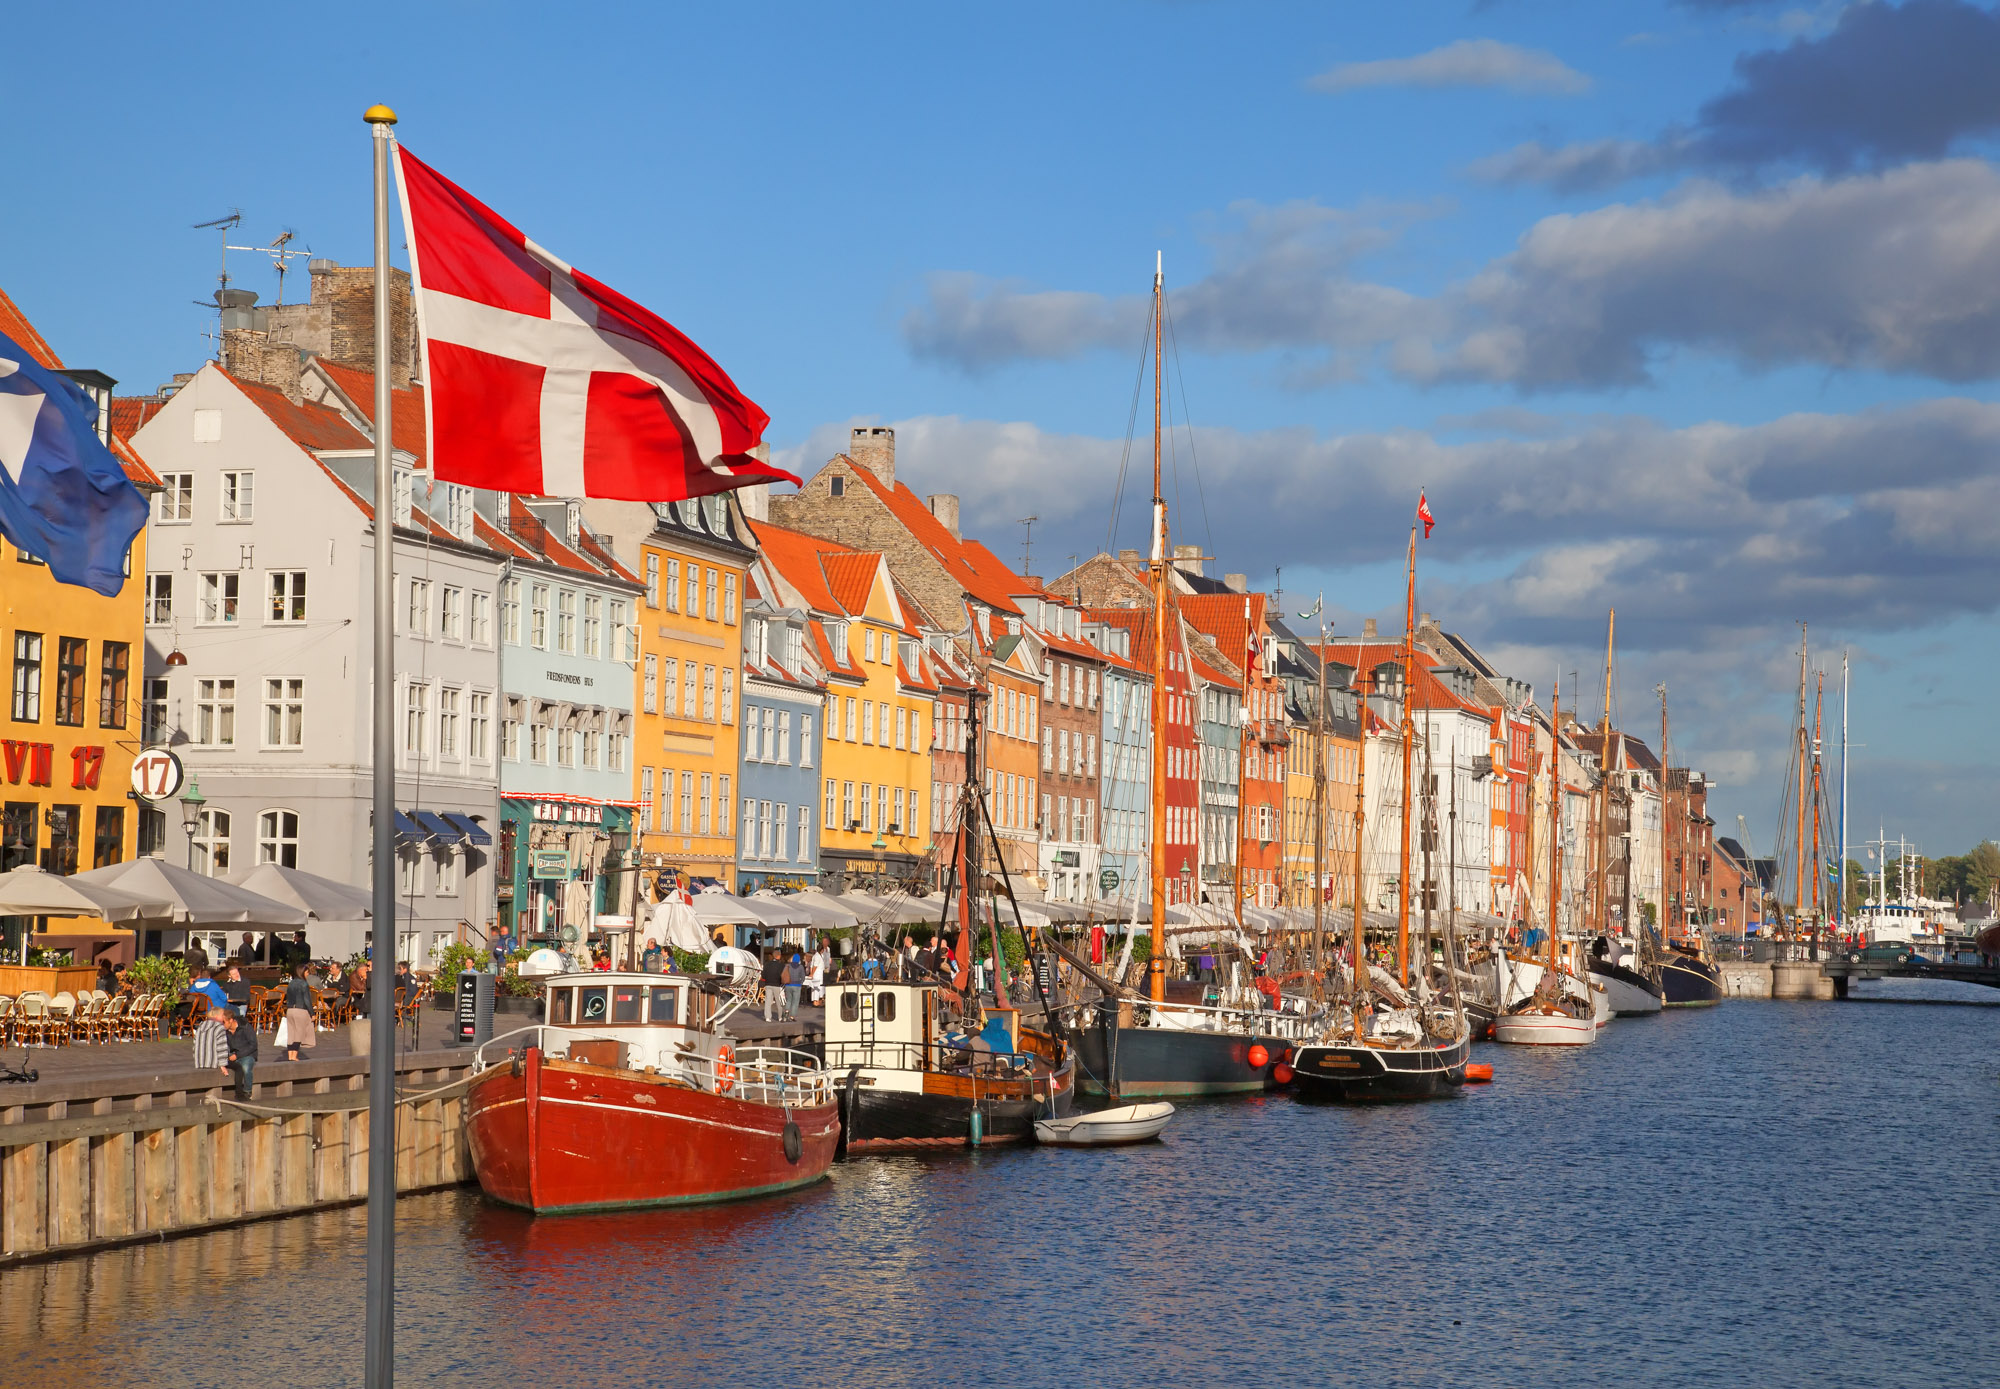 Од септембра Данска укида све анти-ковид мере